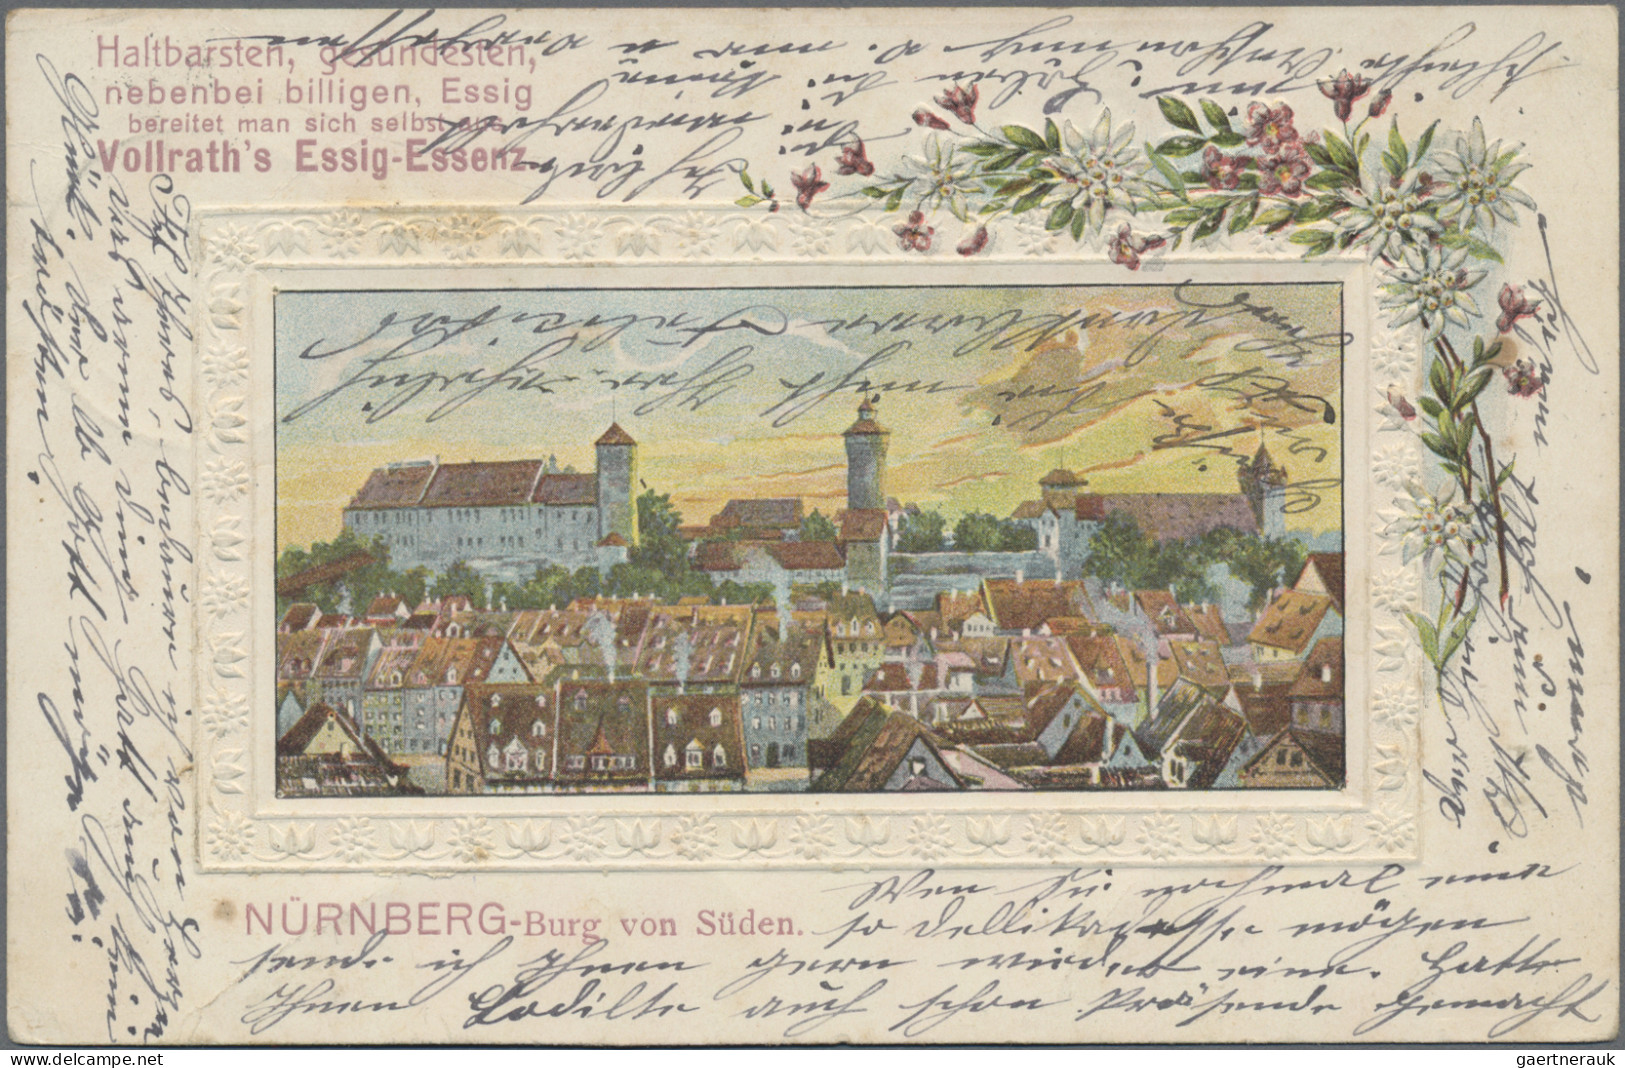 Ansichtskarten: Bayern: BAYERN, umfangreicher Posten von ca. 670 alten Ansichtsk